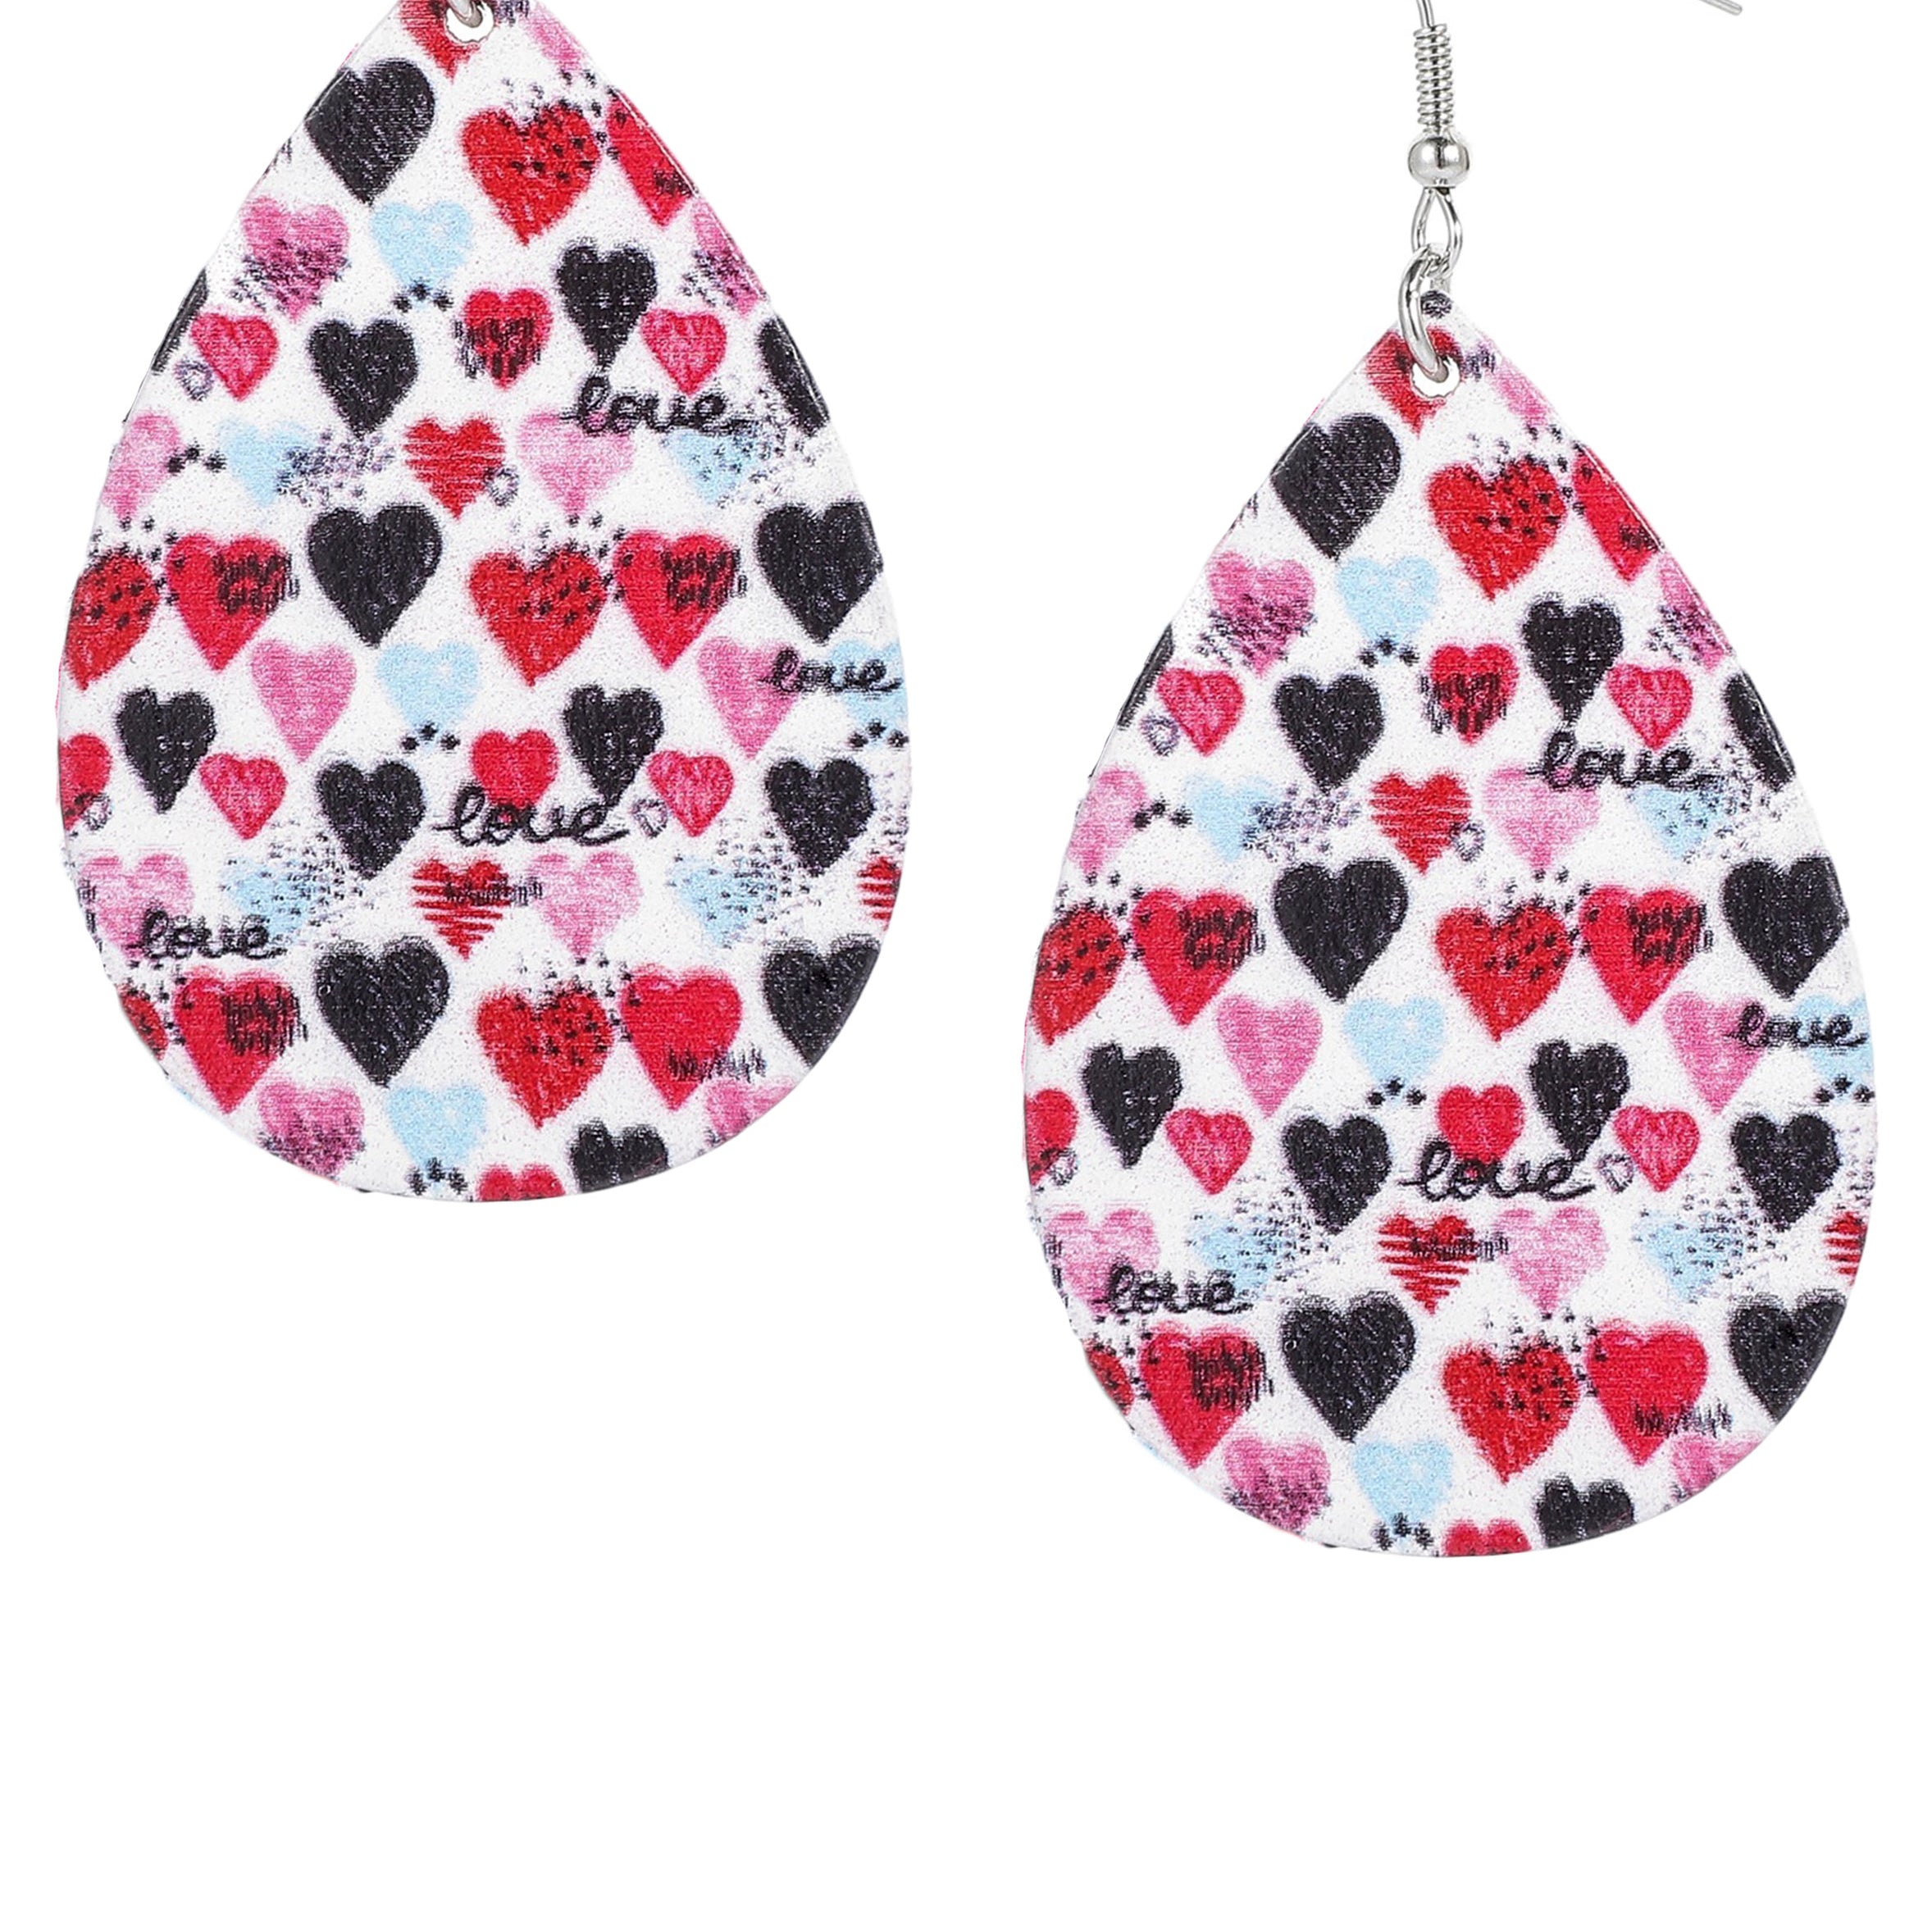 Heart Pattern Teardrop Wooden Earrings E7149